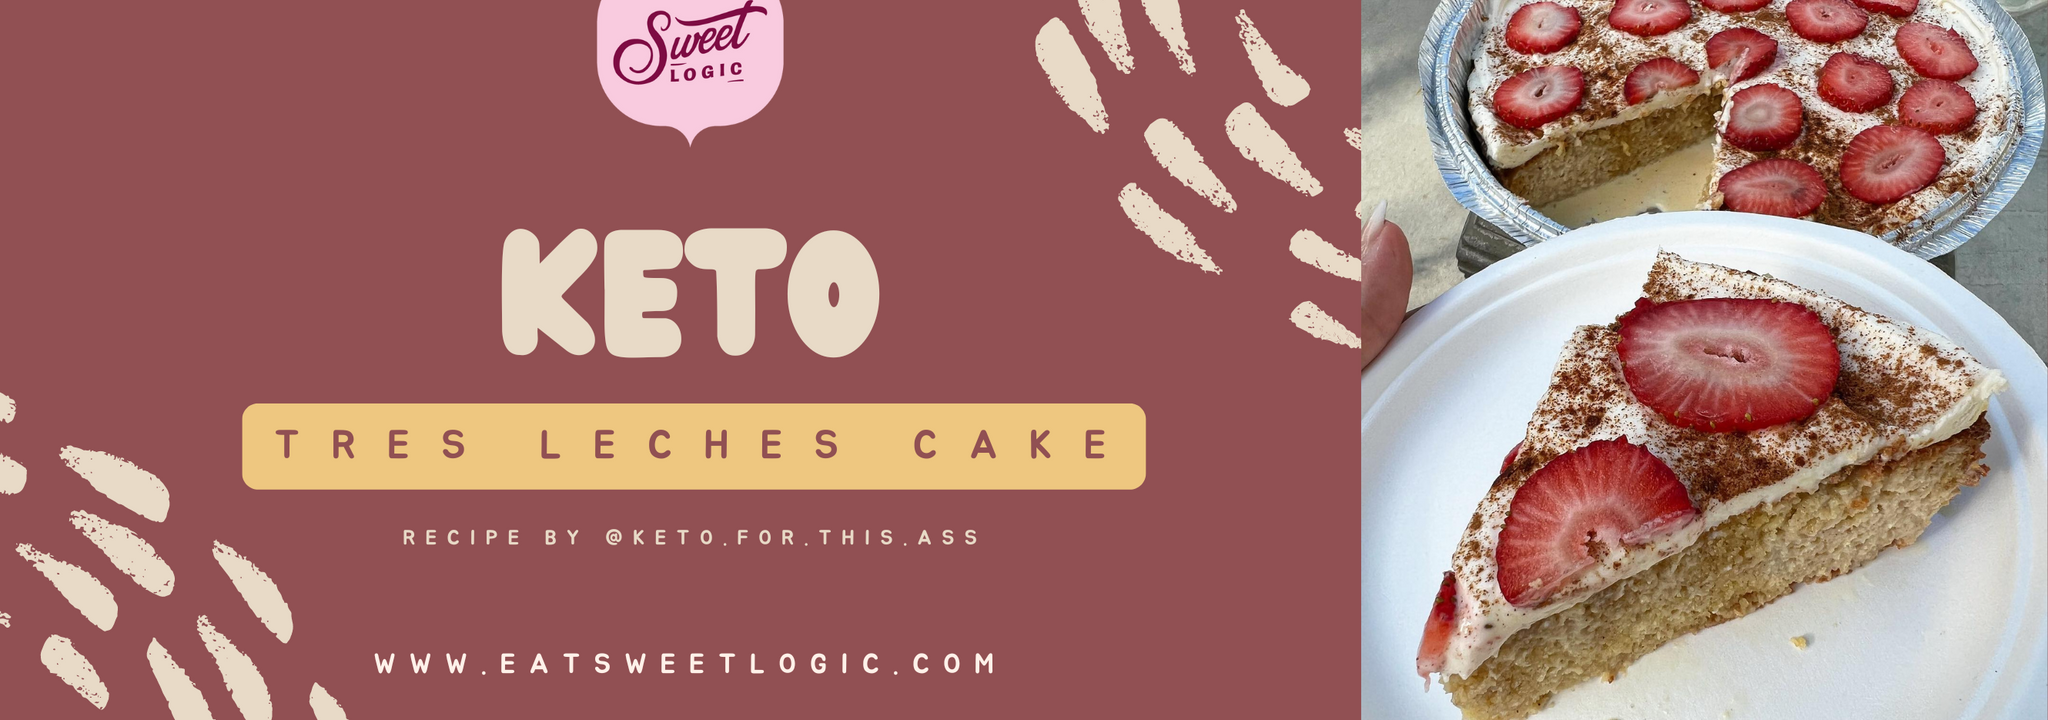 Keto Tres Leches Cake